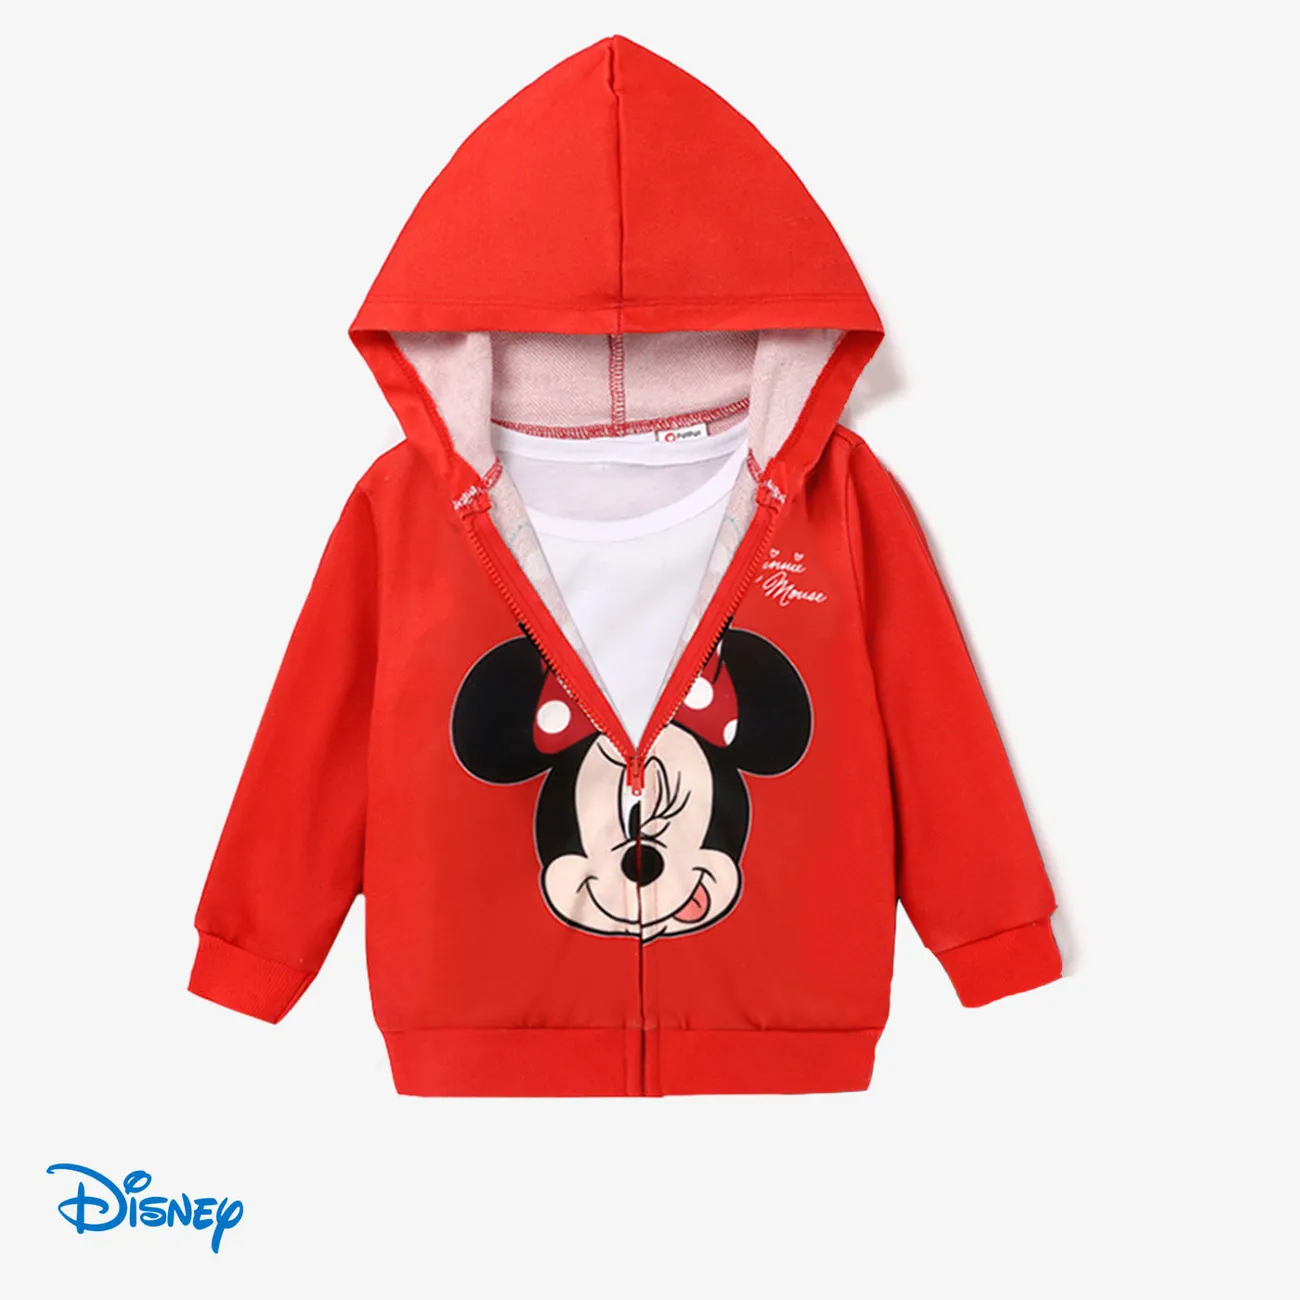 Disney Mickey and Friends 2 unidades Niño pequeño Chica Cremallera Infantil conjuntos de chaqueta rojo 2 big image 1